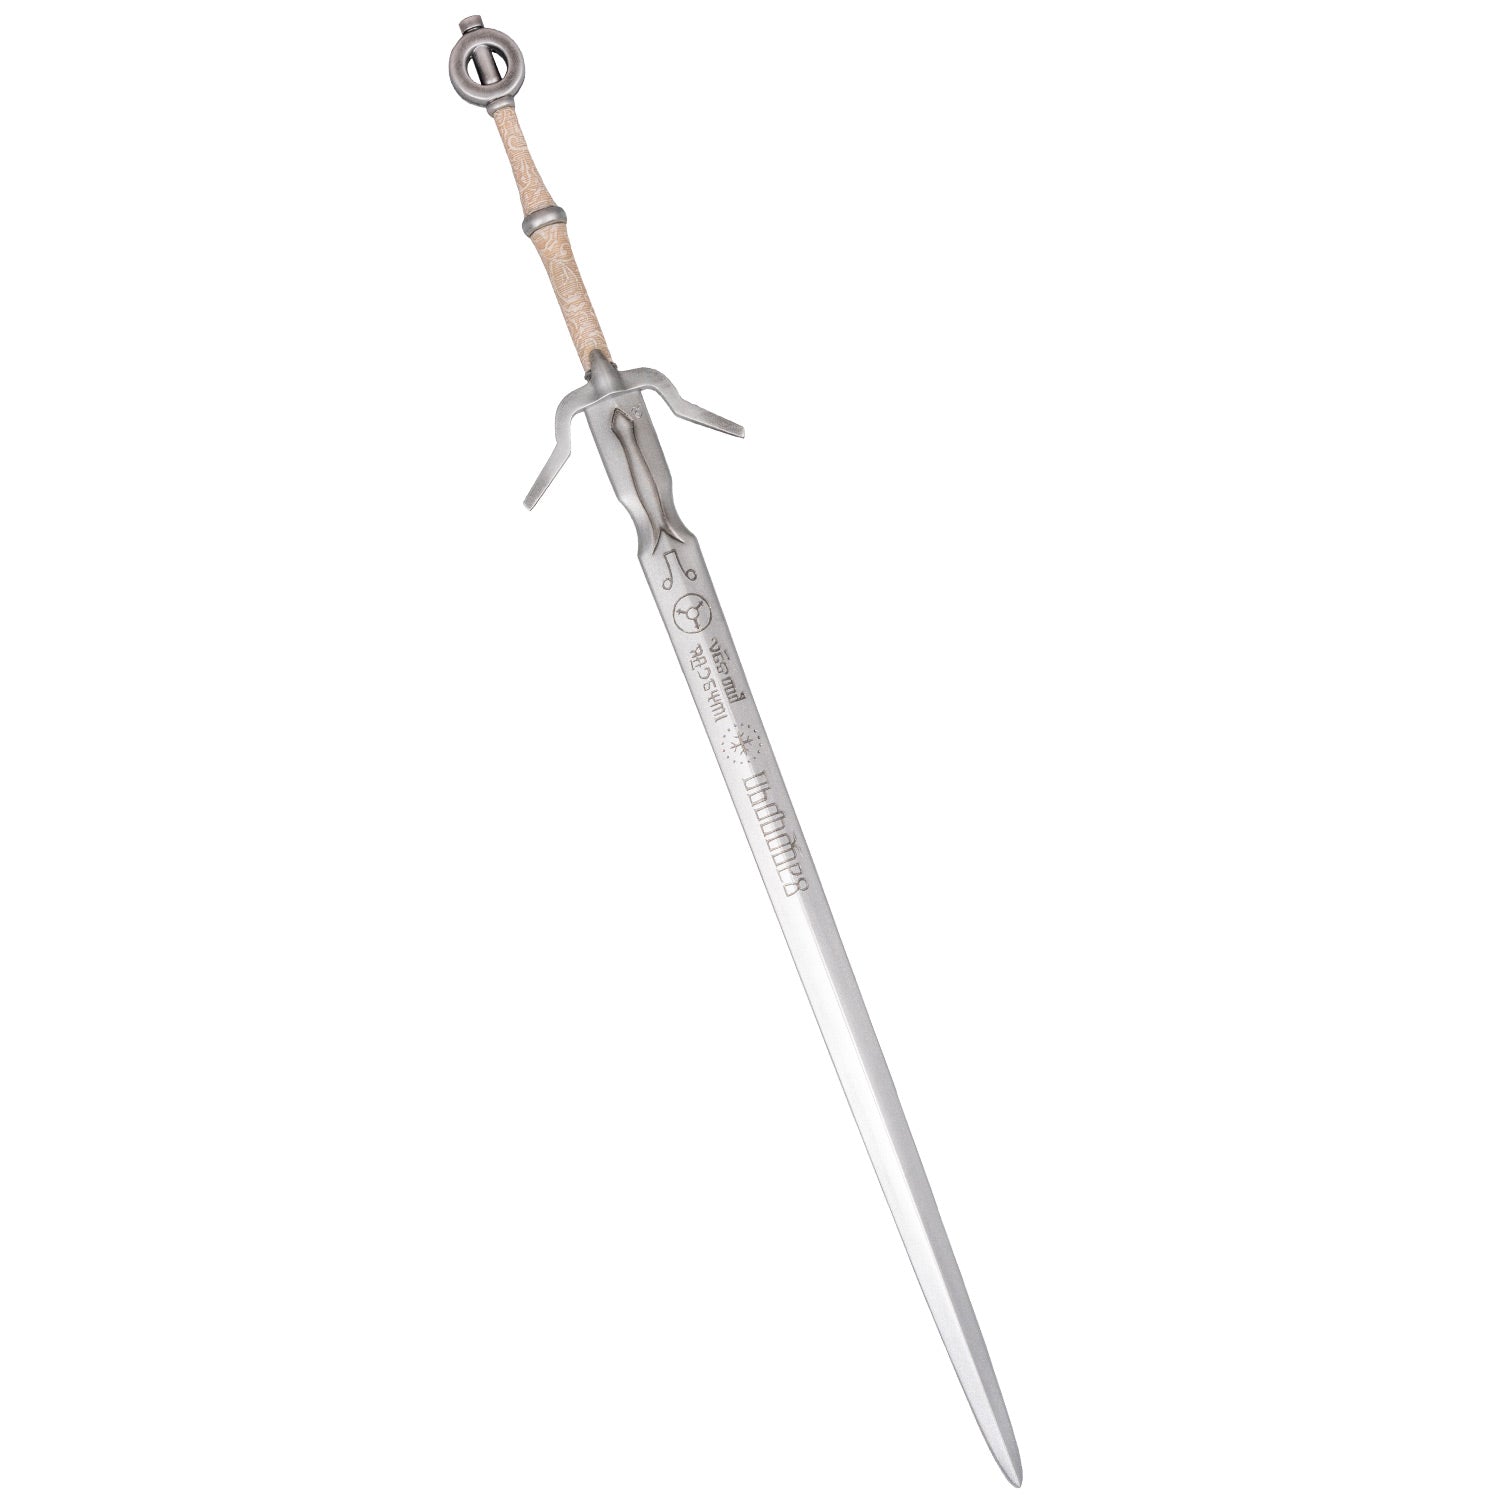 Zireael - Ciri's sword